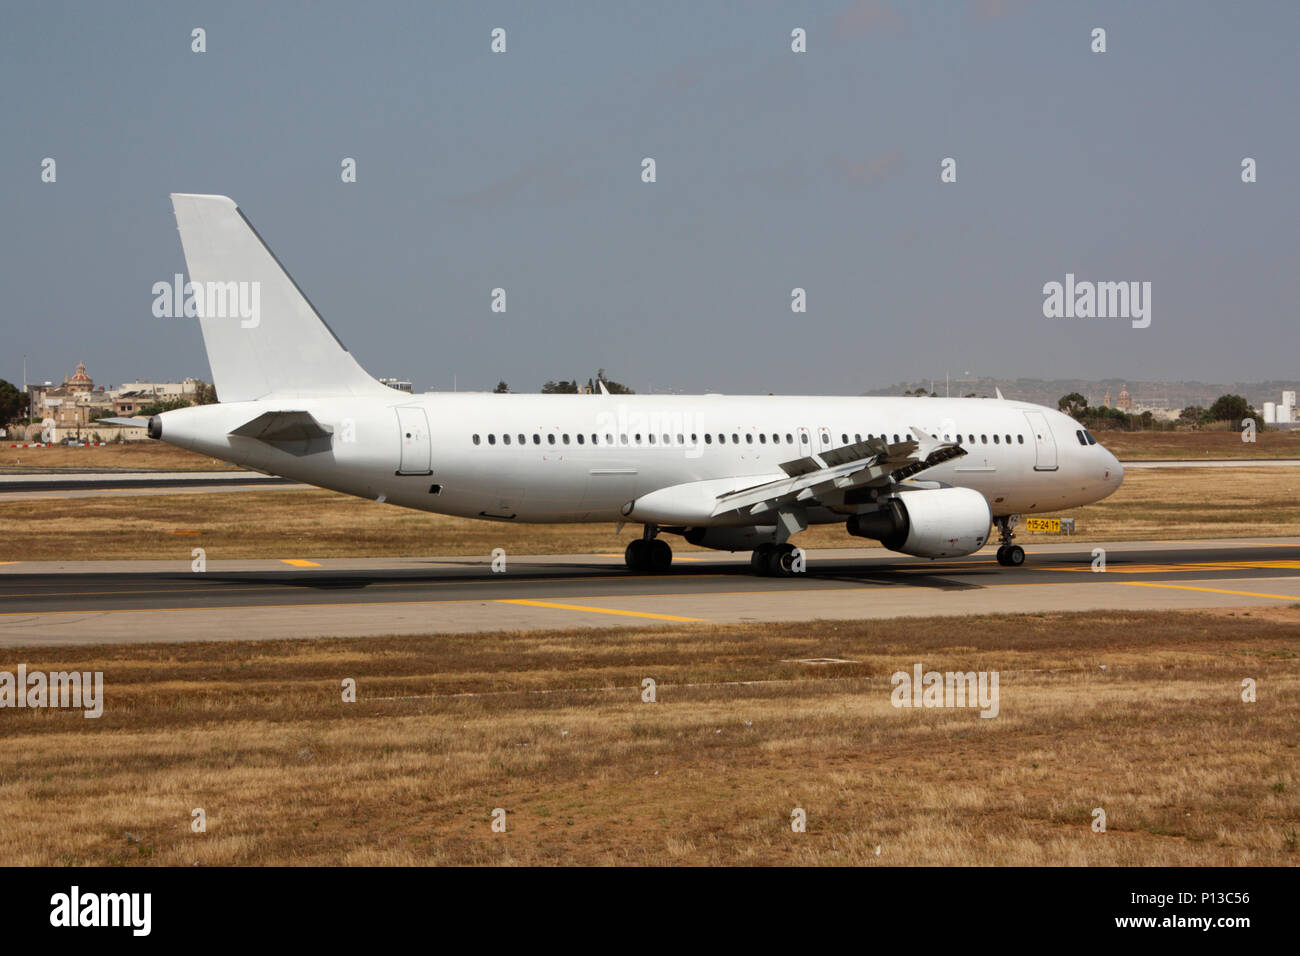 Airbus A320 passager commercial jet airplane taxiing sur une voie de circulation après l'atterrissage. Détails de propriété supprimé et aucune personnes visibles. Le transport aérien. Banque D'Images